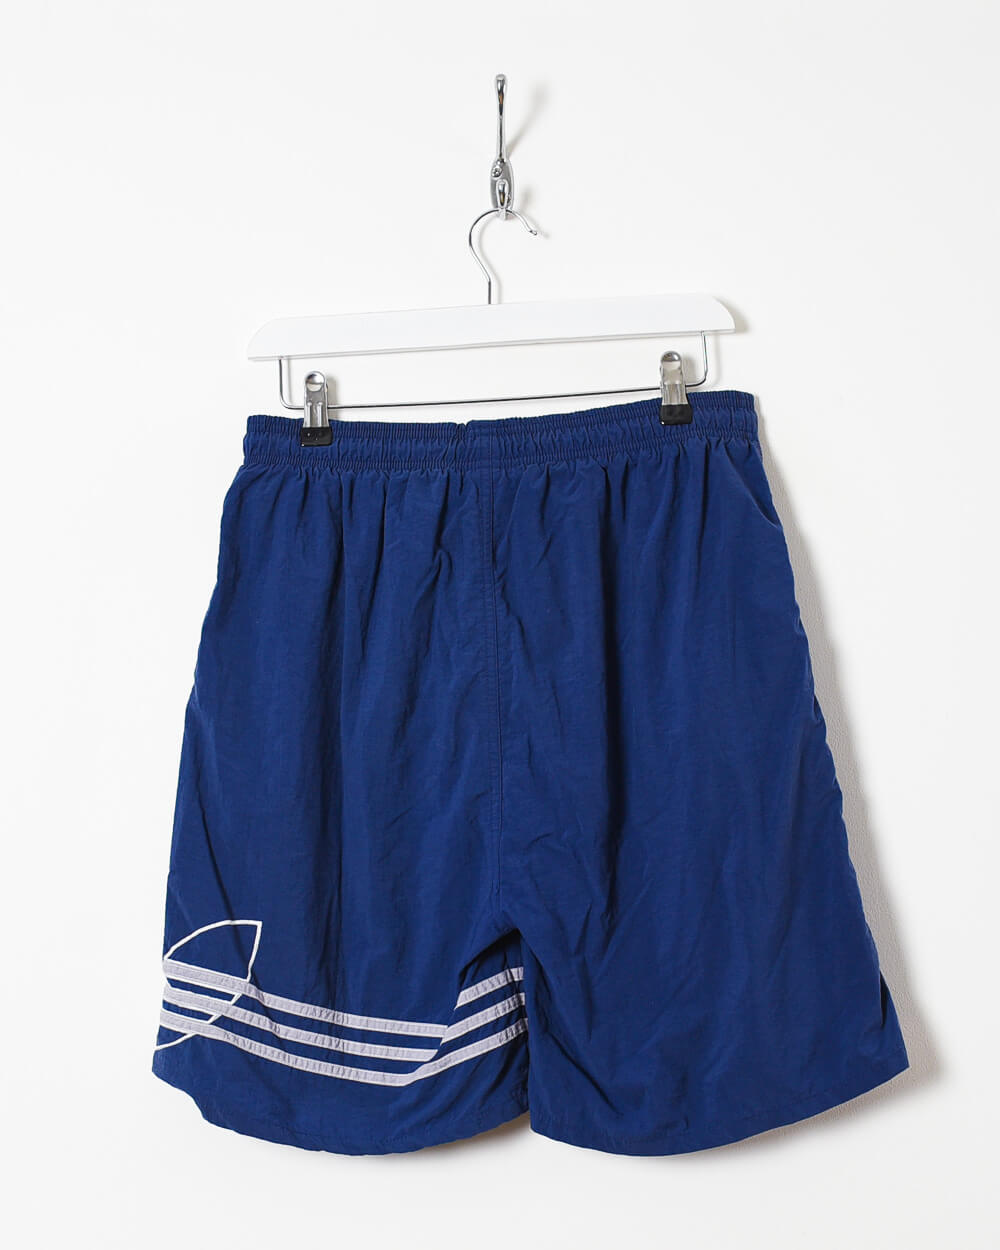 Blue Adidas Shorts - W30